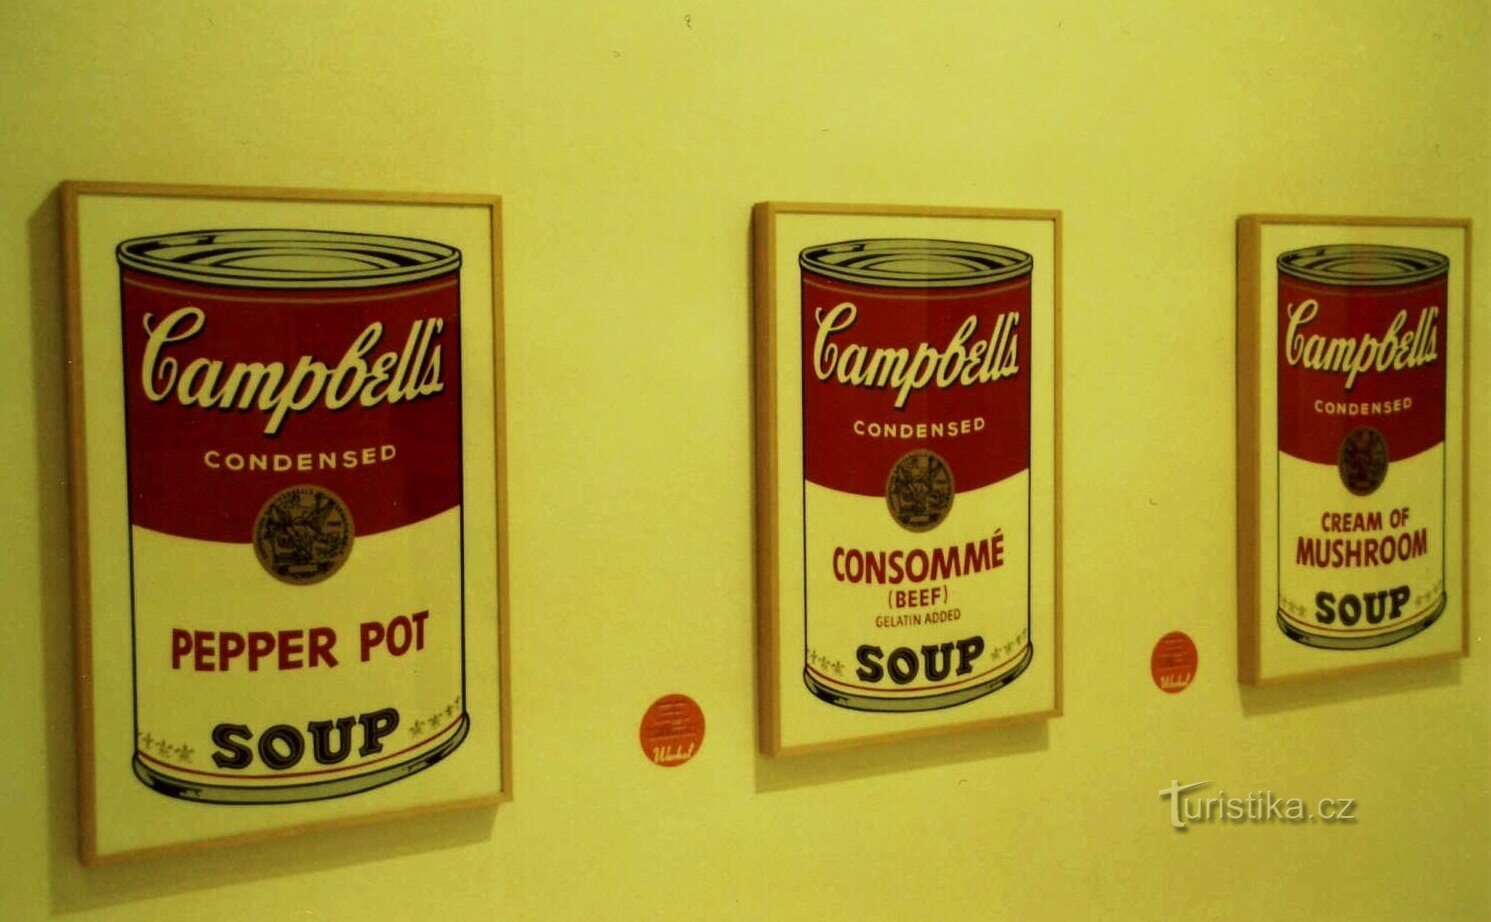 Supele lui Campbell